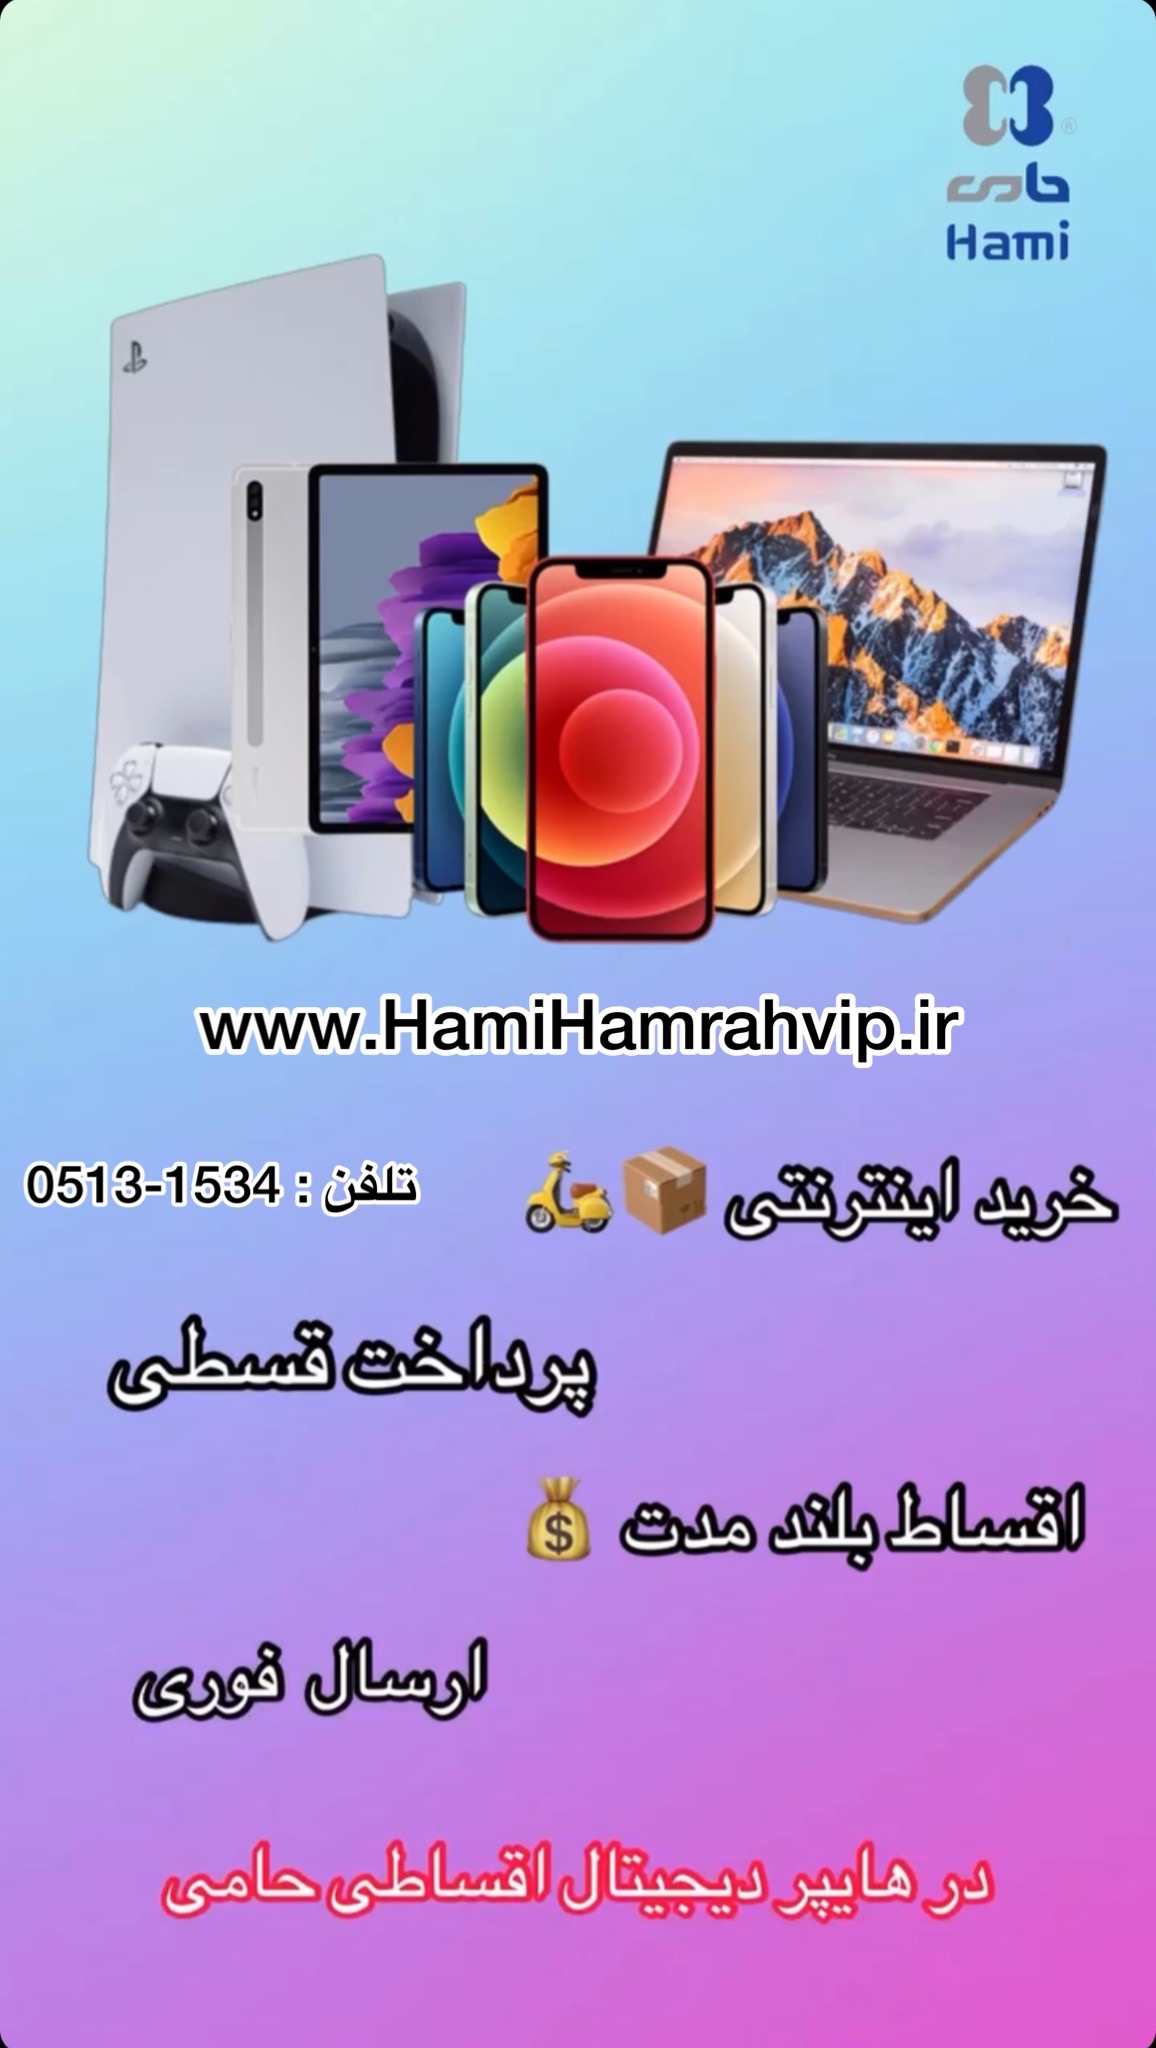 موبایل اقساطی درفروشگاه حامی www.hamihamrahvip.ir